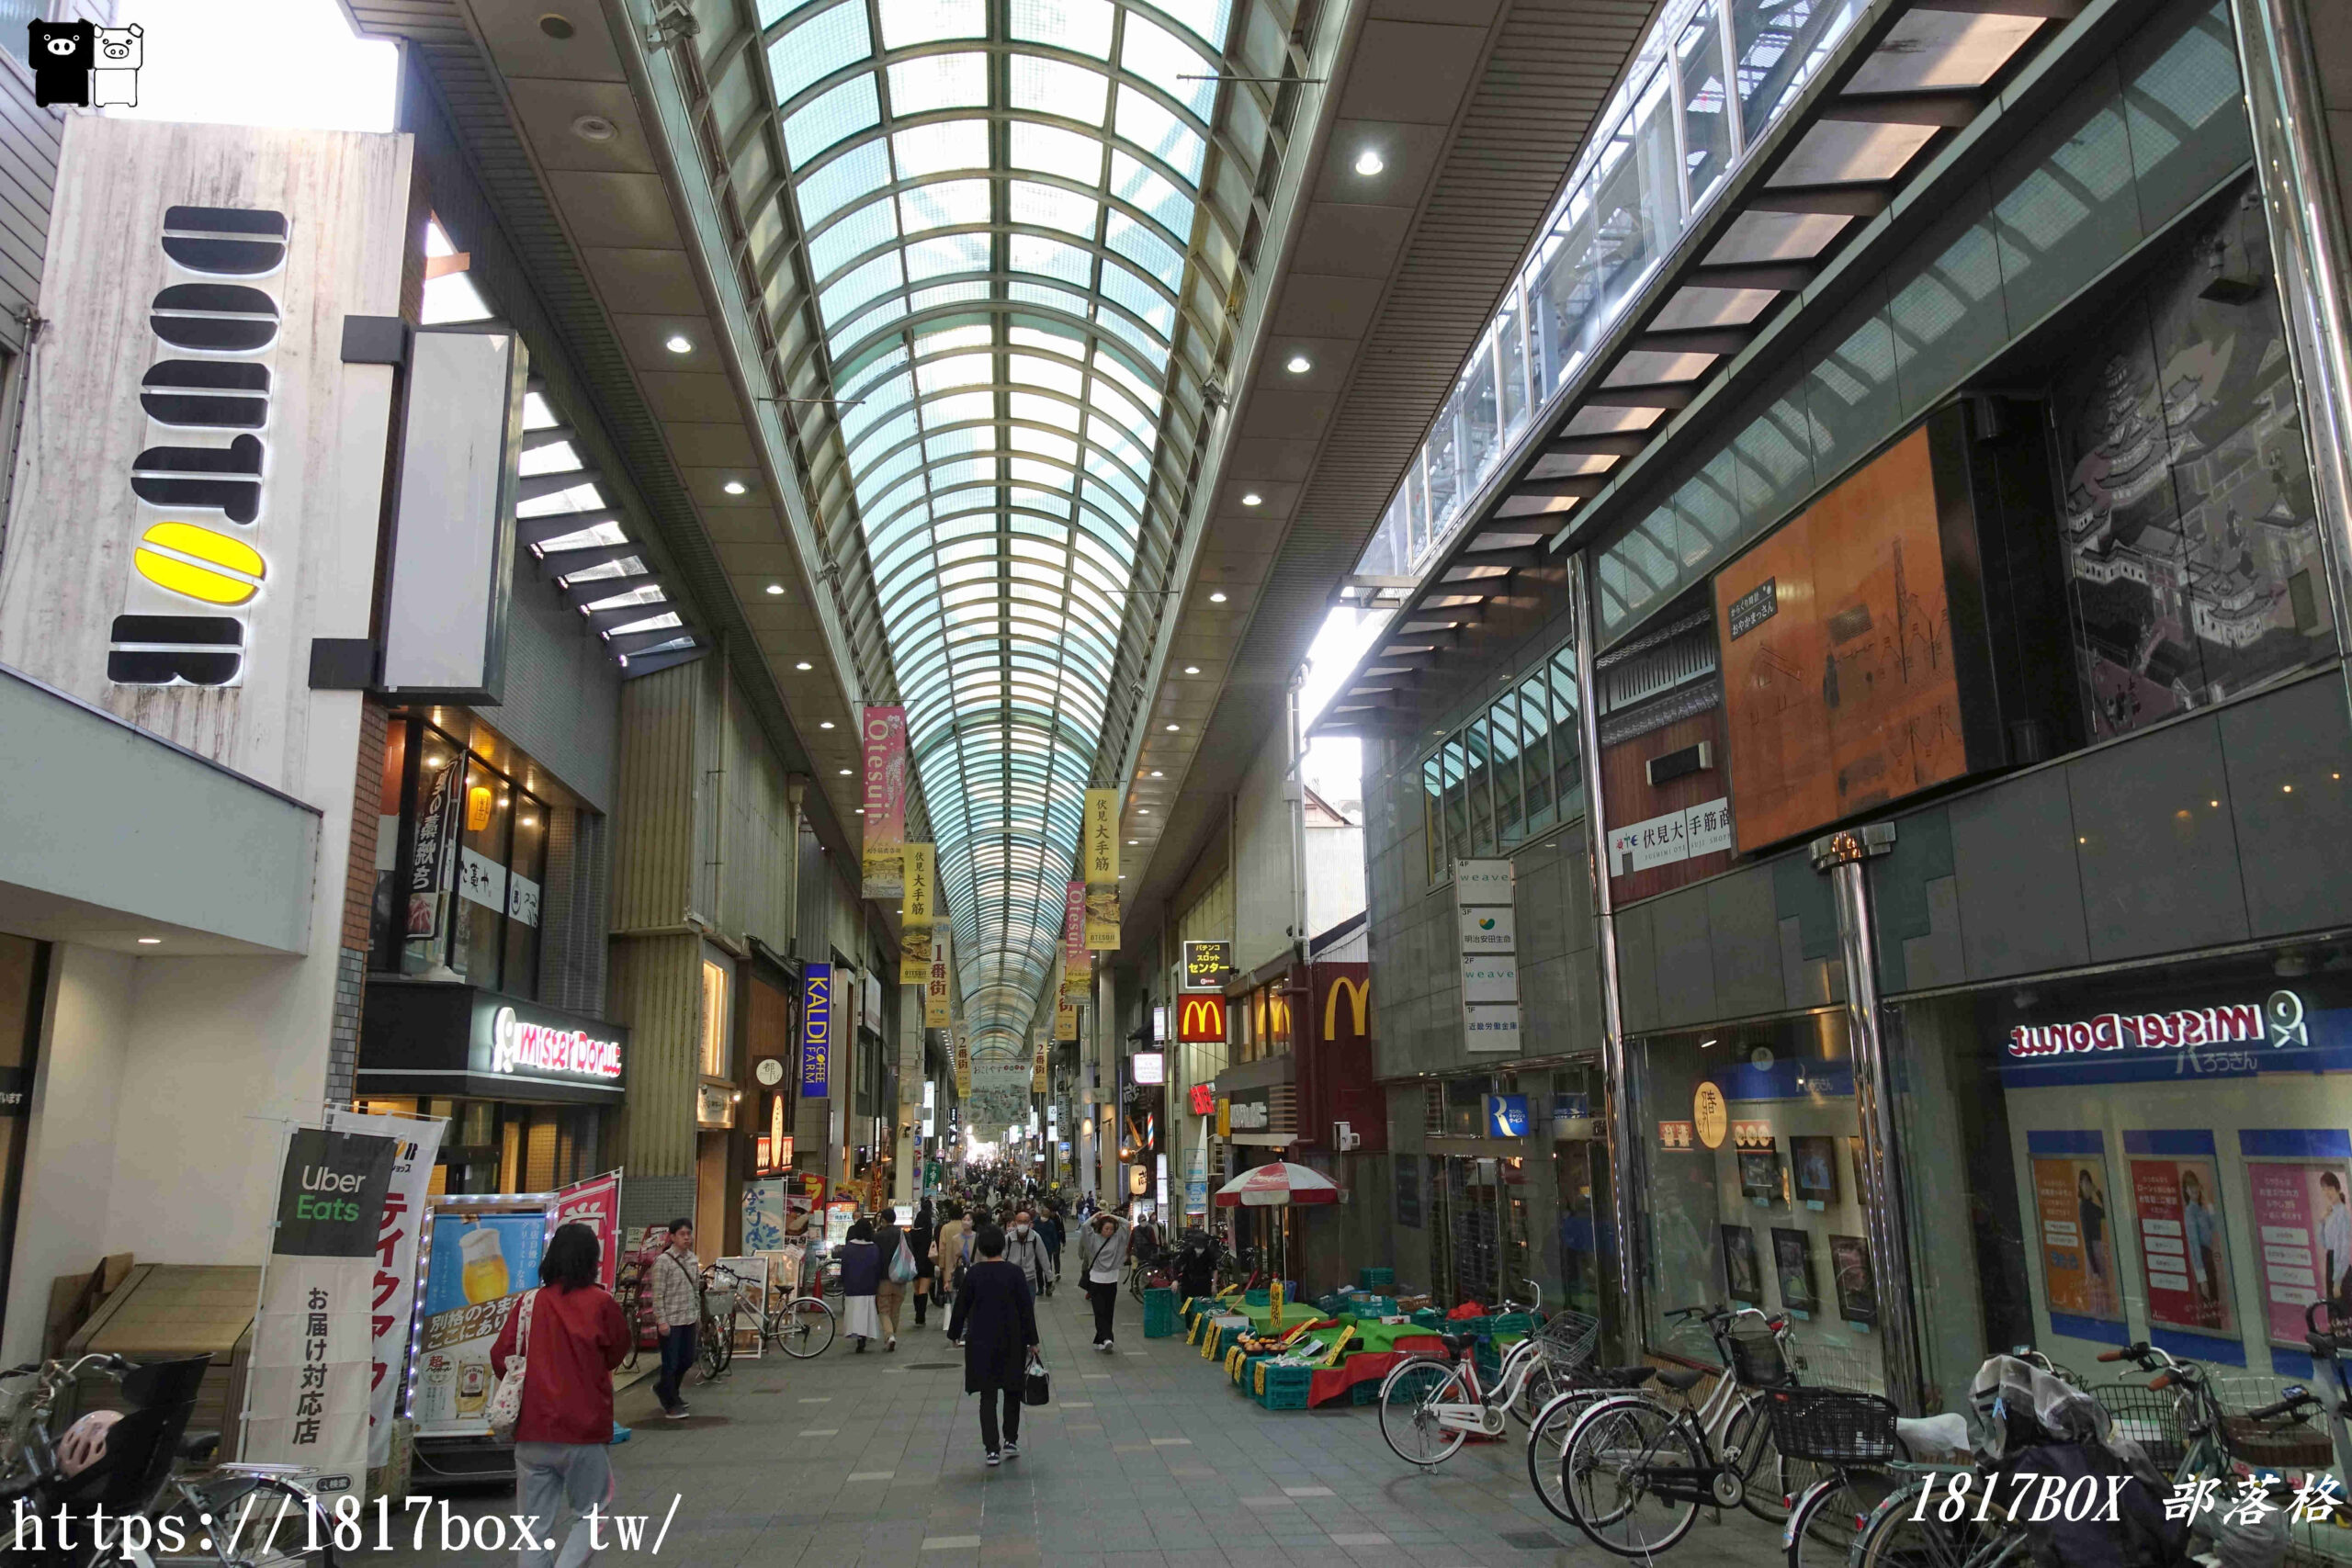 網站近期文章：【京都景點】伏見大手筋商店街。歴史と水と酒の街。伏見地區最熱鬧的商店街之一